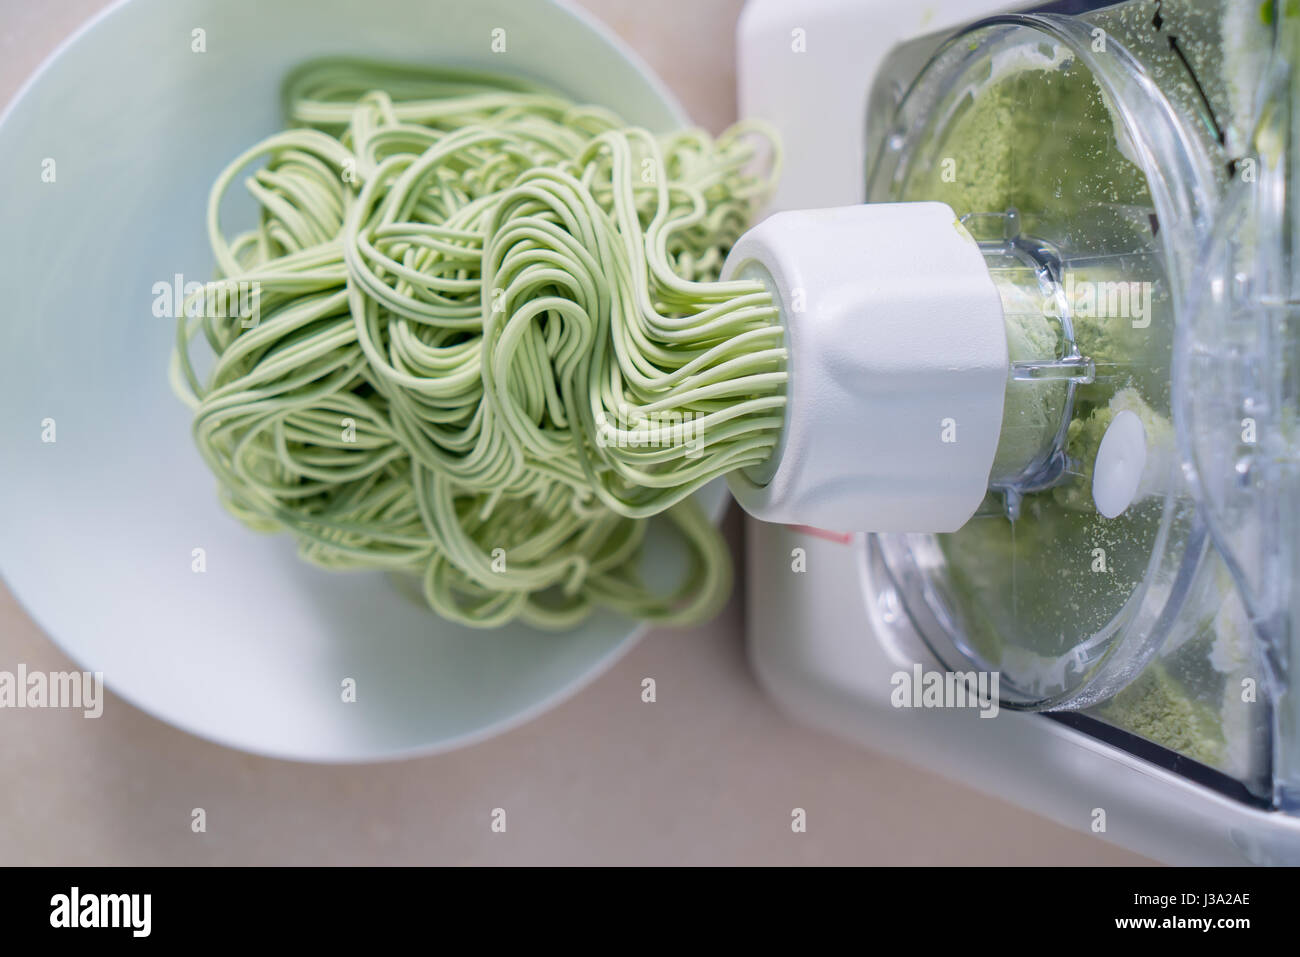 Grüne Spaghetti Nudeln Blatt in Maschine verarbeitet Stockfoto